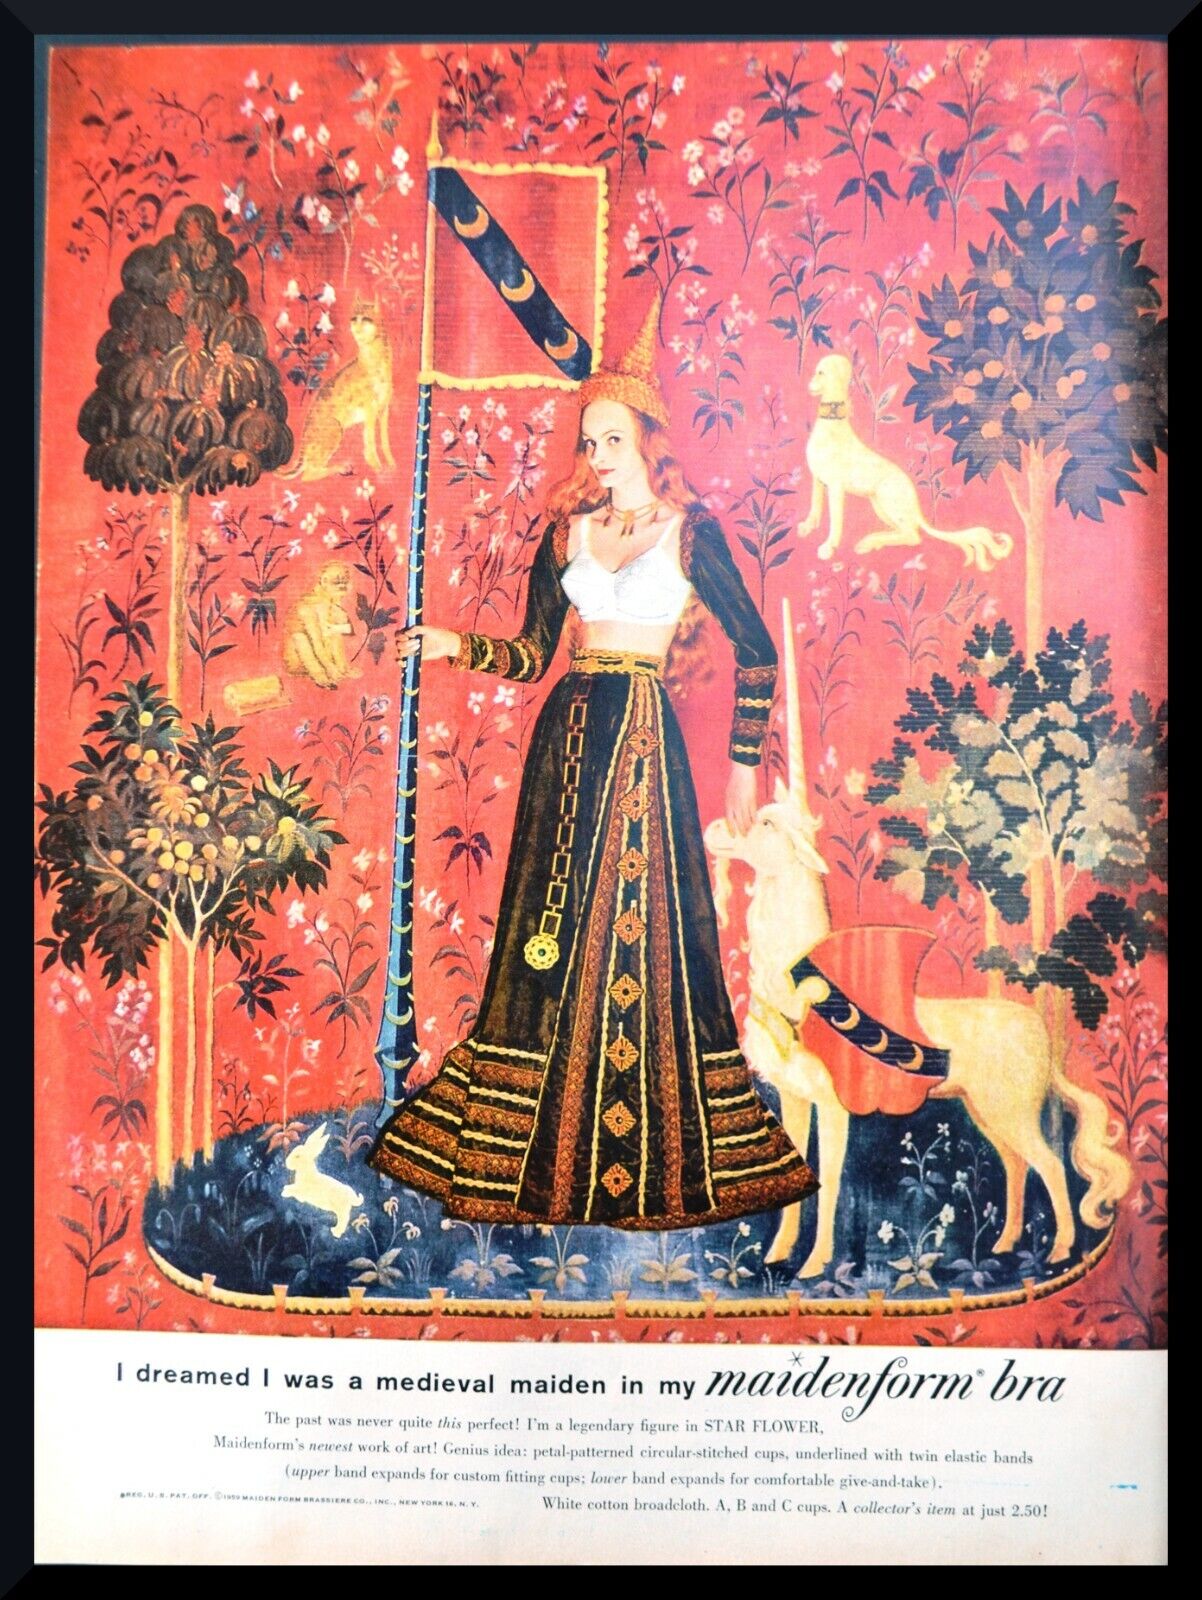 1960 MAIDENFORM Bra Medieval Maiden Woman in Bra Unicorn Art VINTAGE Print AD